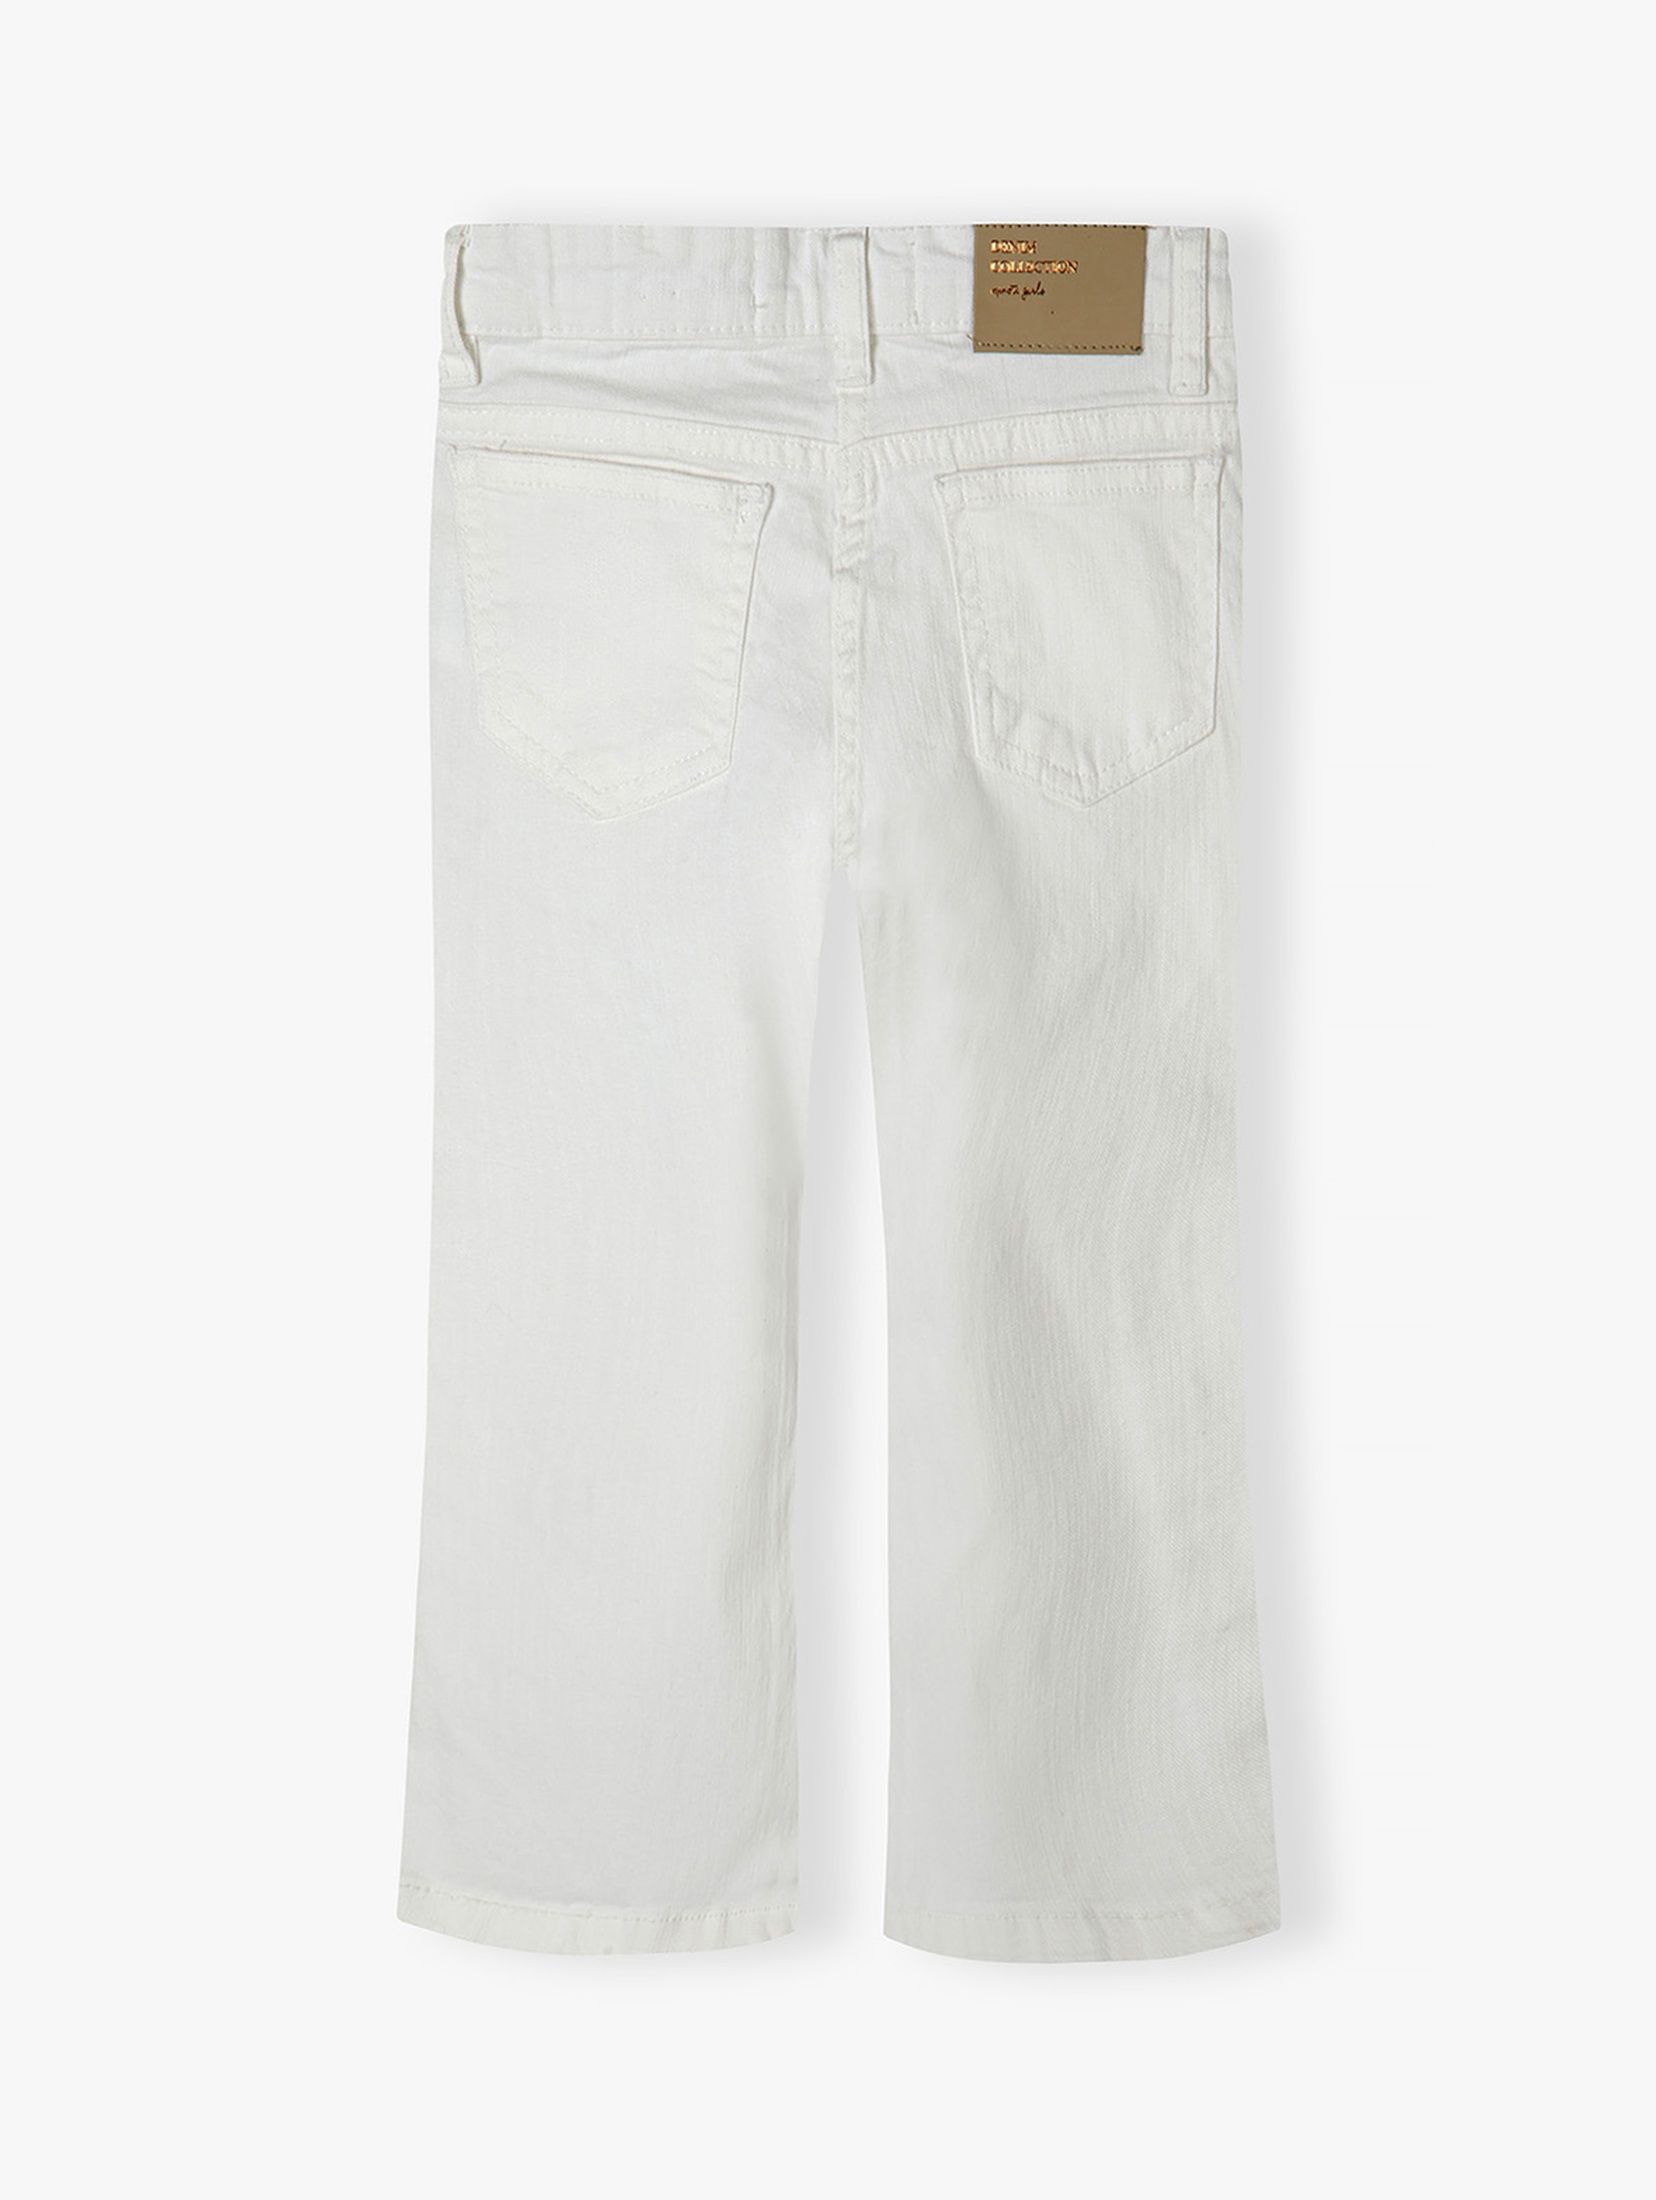 Białe spodnie jeansowe niemowlęce rozkloszowane